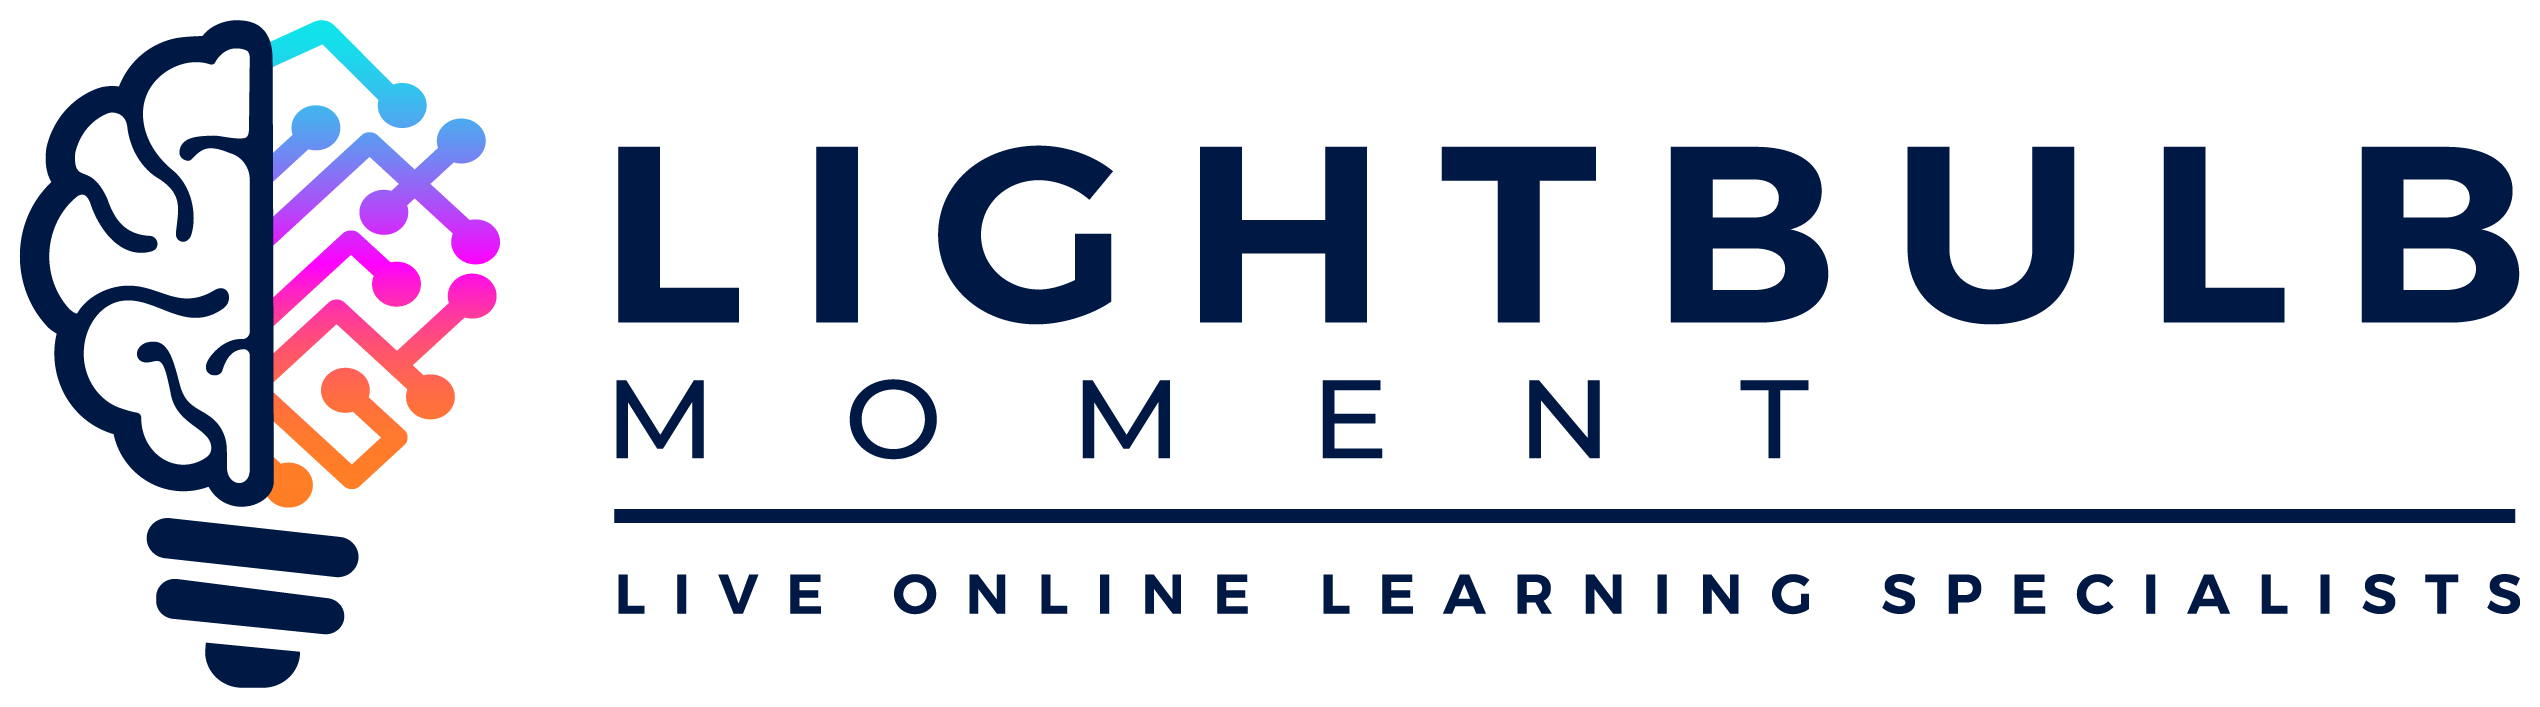 Lightbulb Moment logo